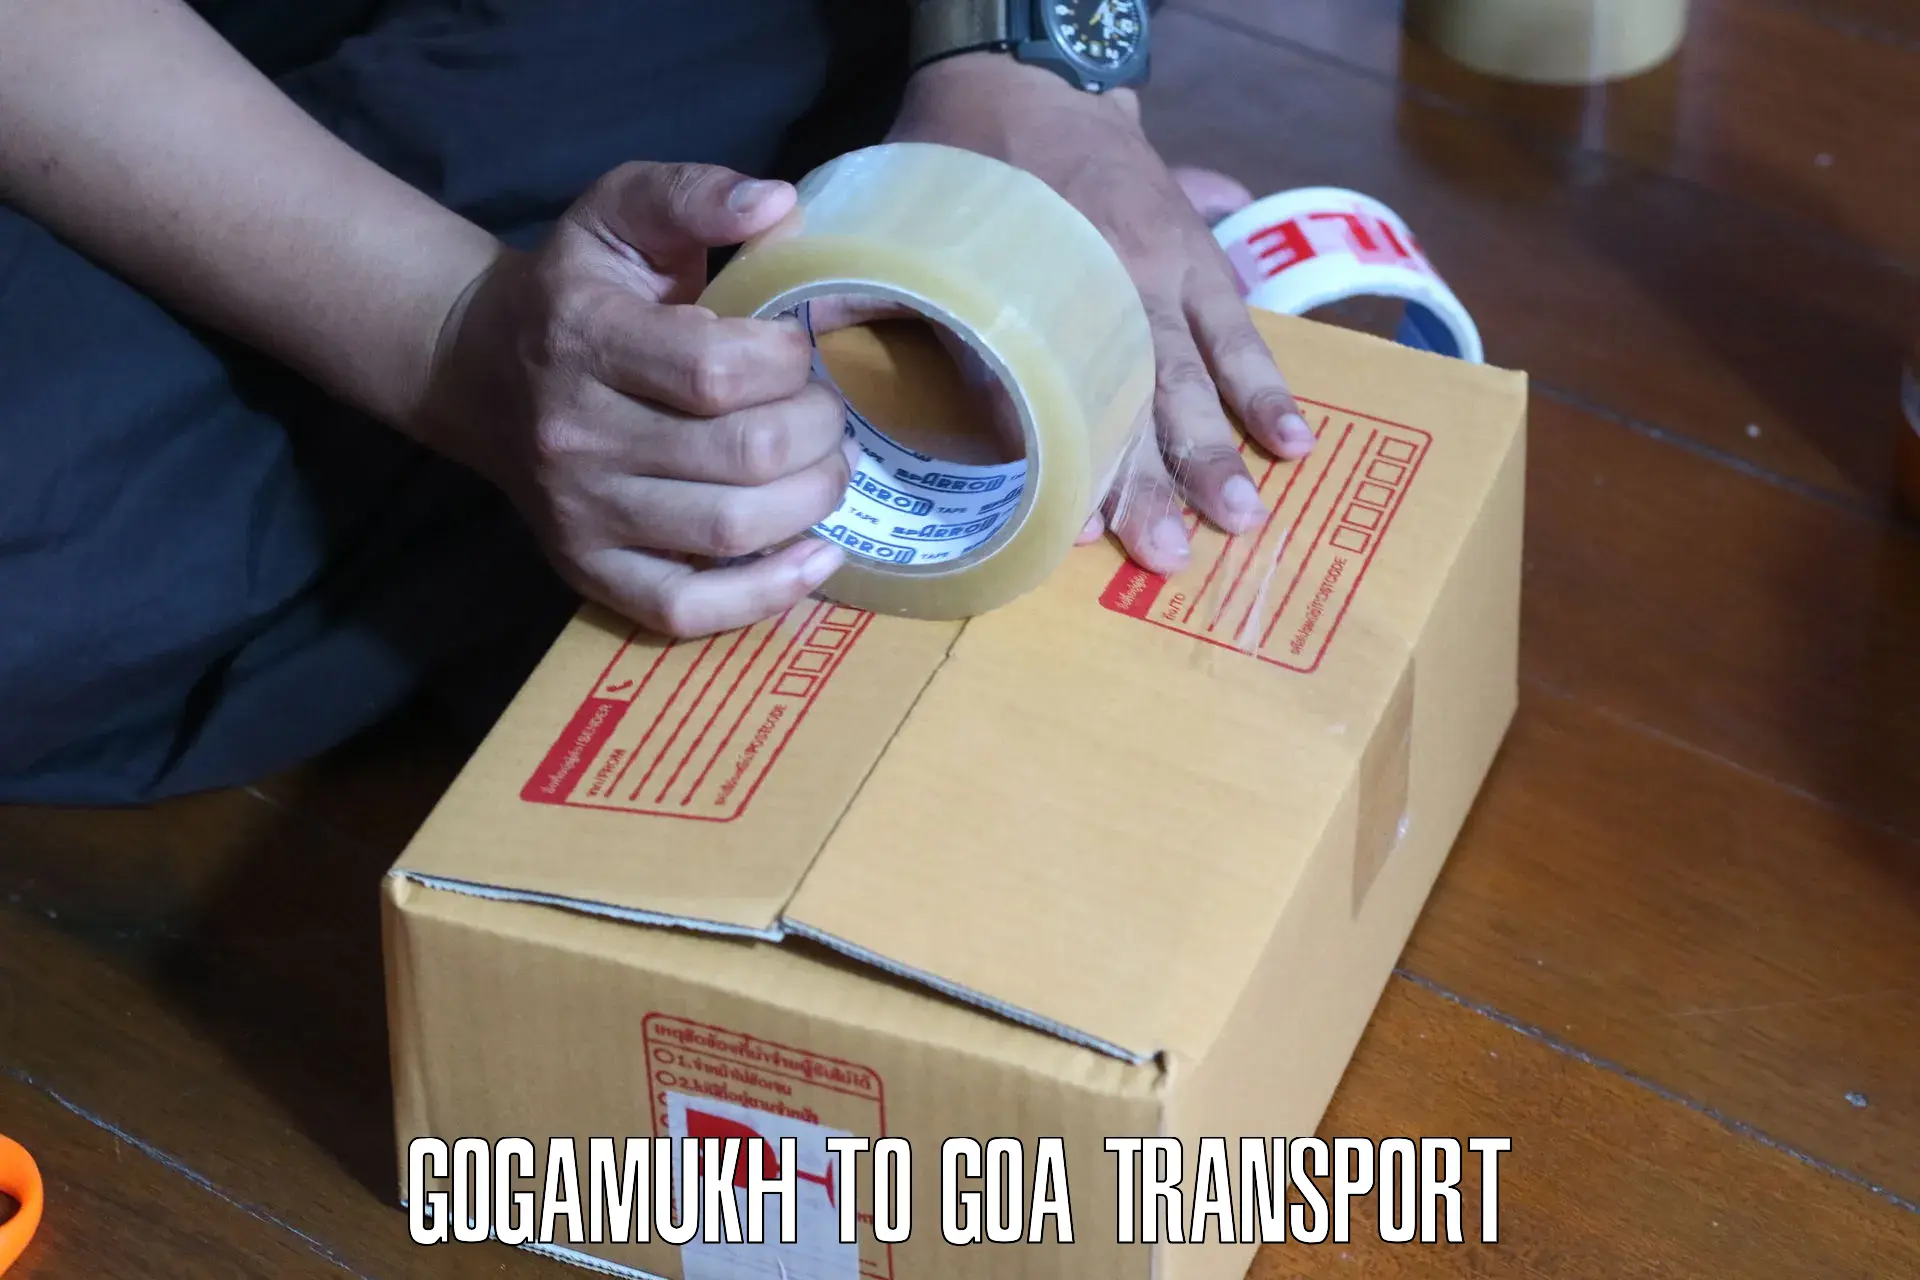 Lorry transport service Gogamukh to Canacona